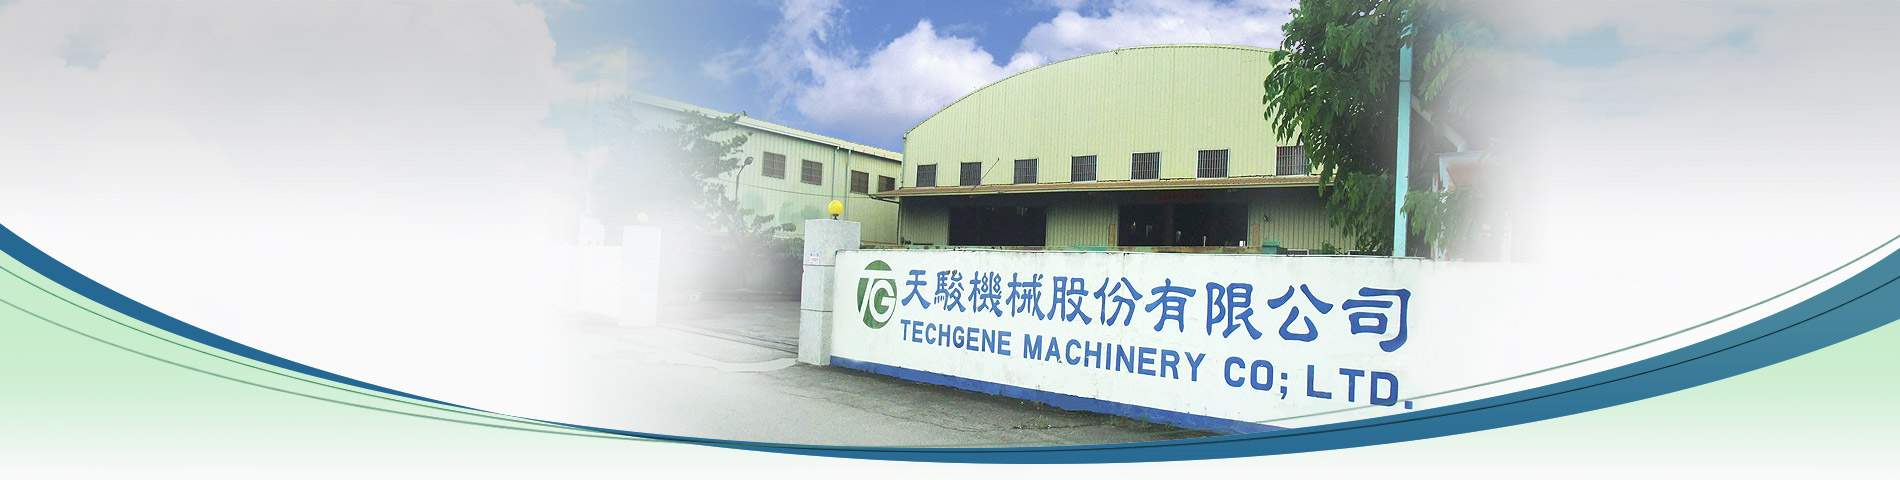 專業設計生產 自動壓縮捆包機 之 台灣製造商